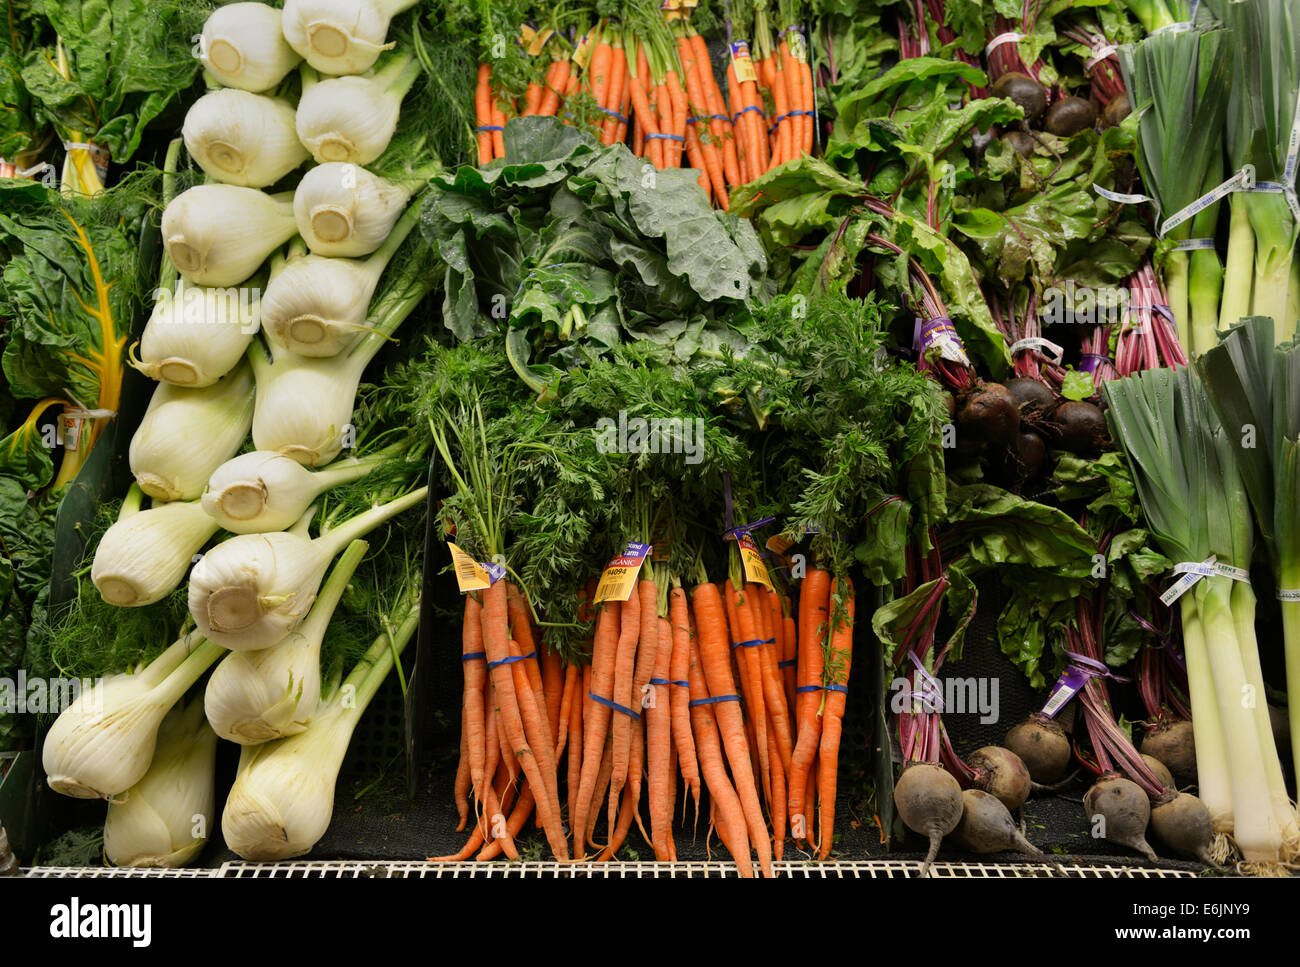 Producir saludable en los estantes en un mercado Foto de stock